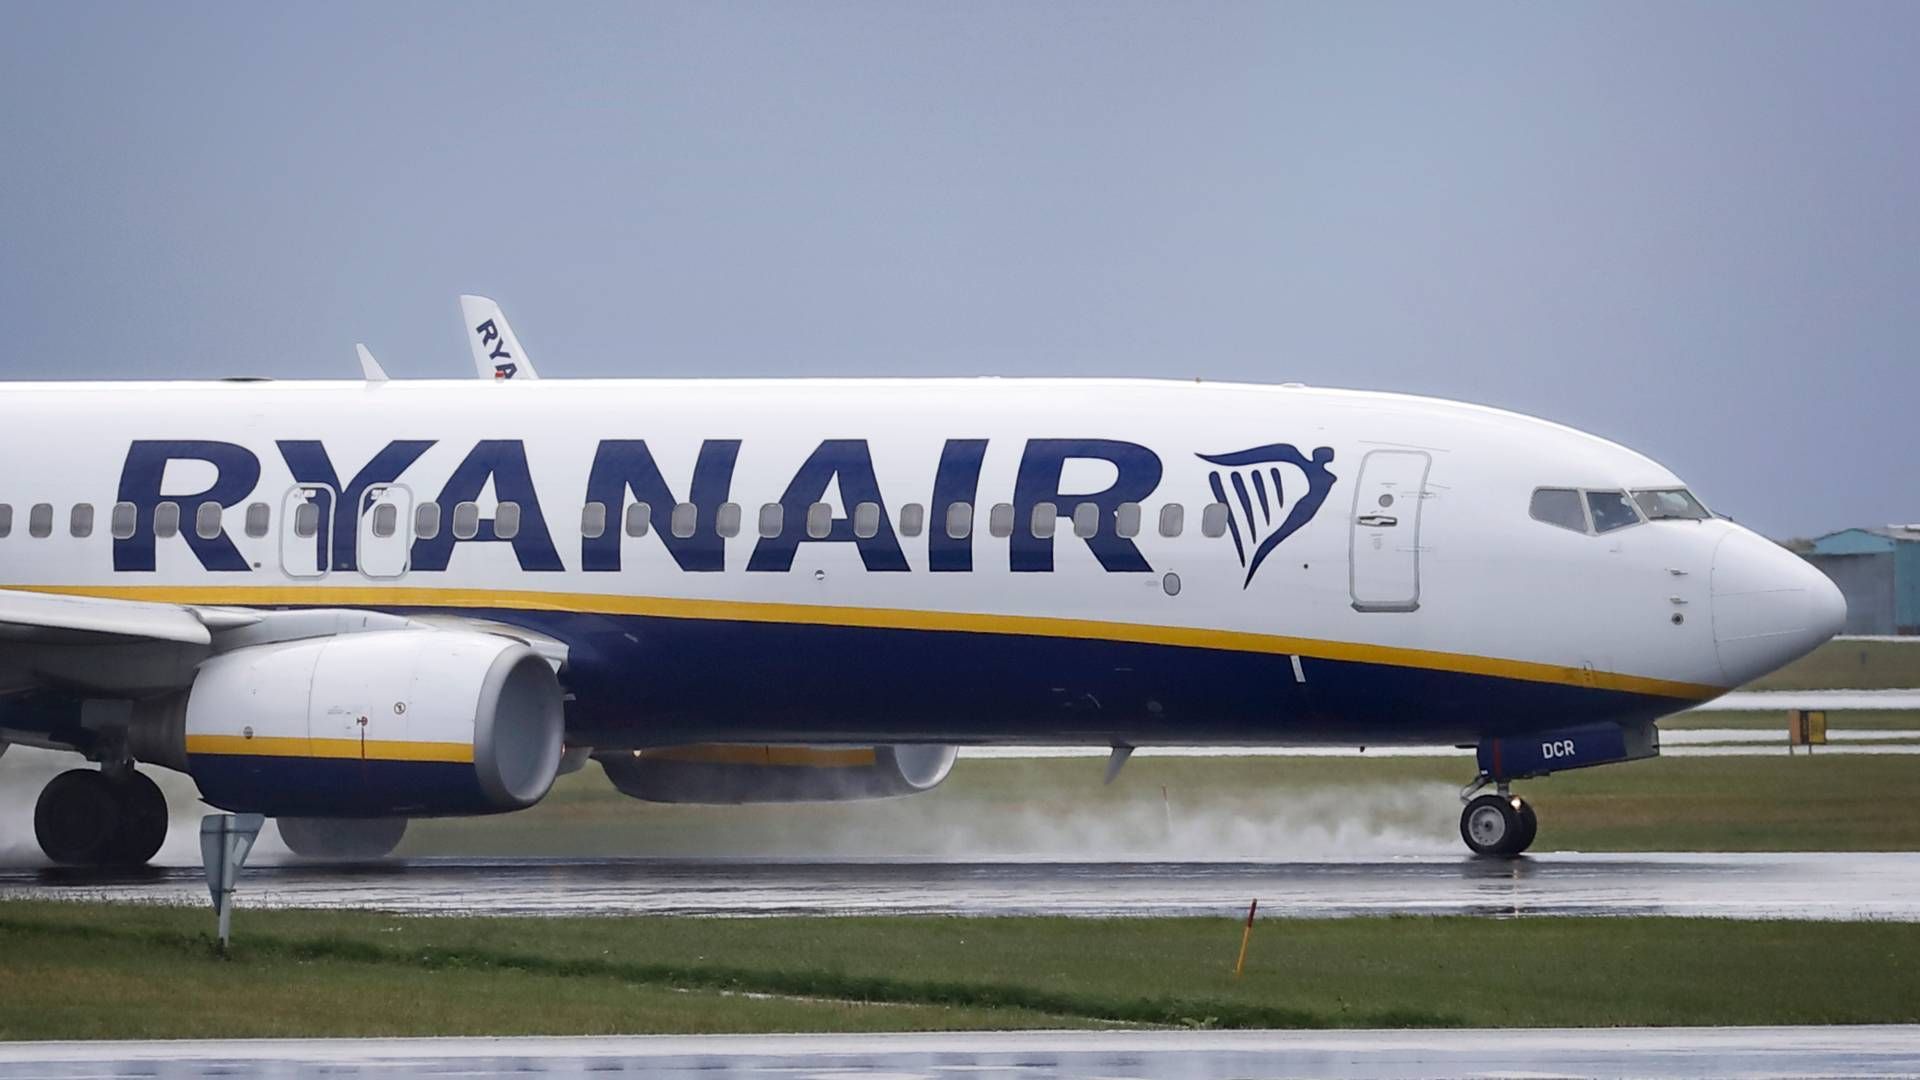 Højere lufthavnsafgifter og flyskatter betyder nu, at Ryanair dropper indenrigsflyvninger i Sverige. | Foto: Jens Dresling/Ritzau Scanpix